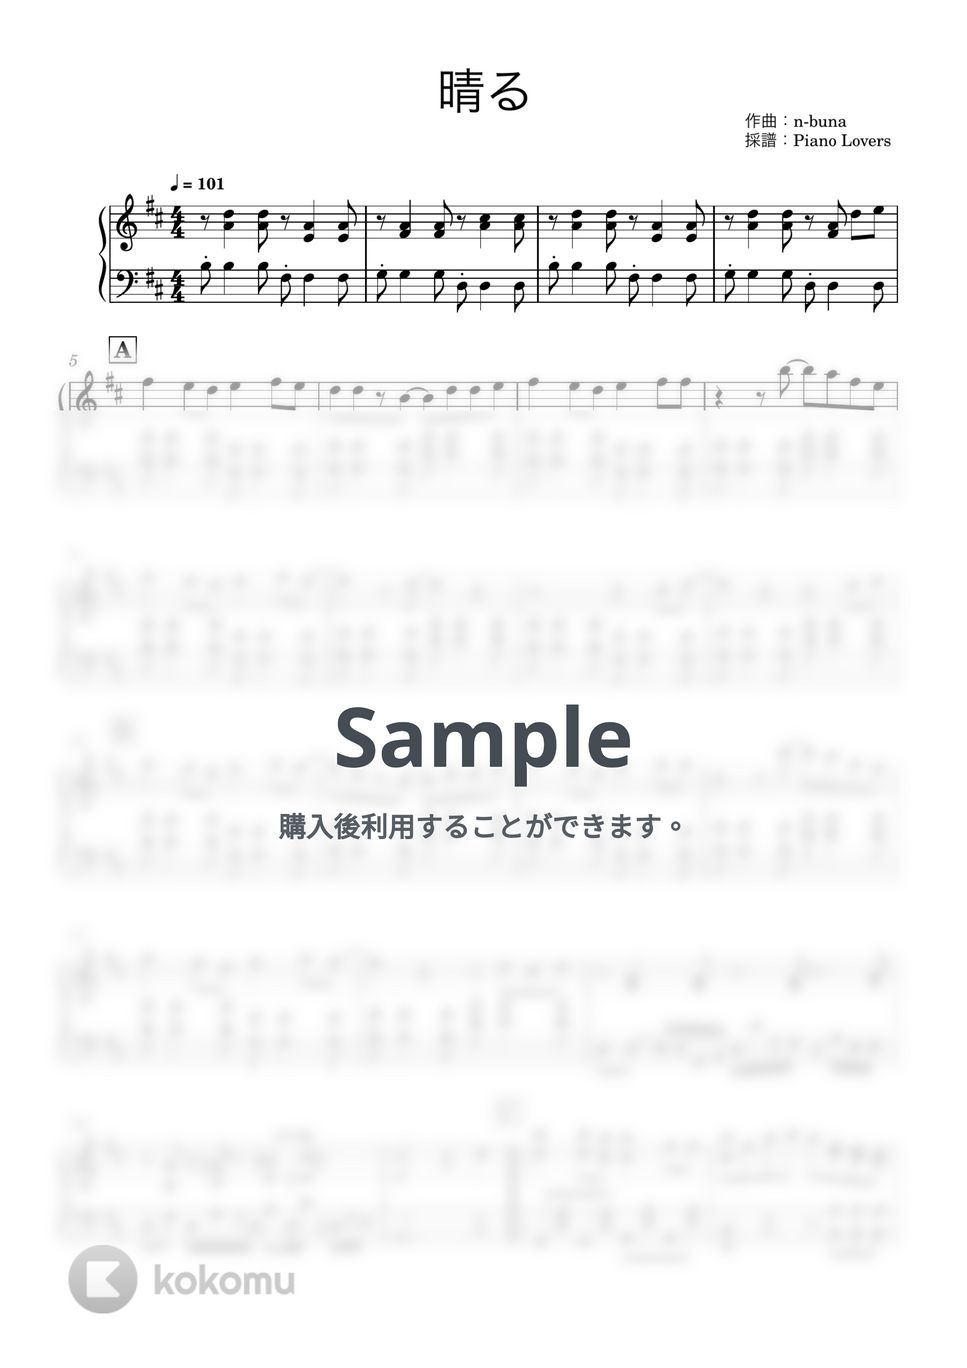 ヨルシカ - 晴る (葬送のフリーレン / ピアノ楽譜 / 中級) by Piano Lovers. jp